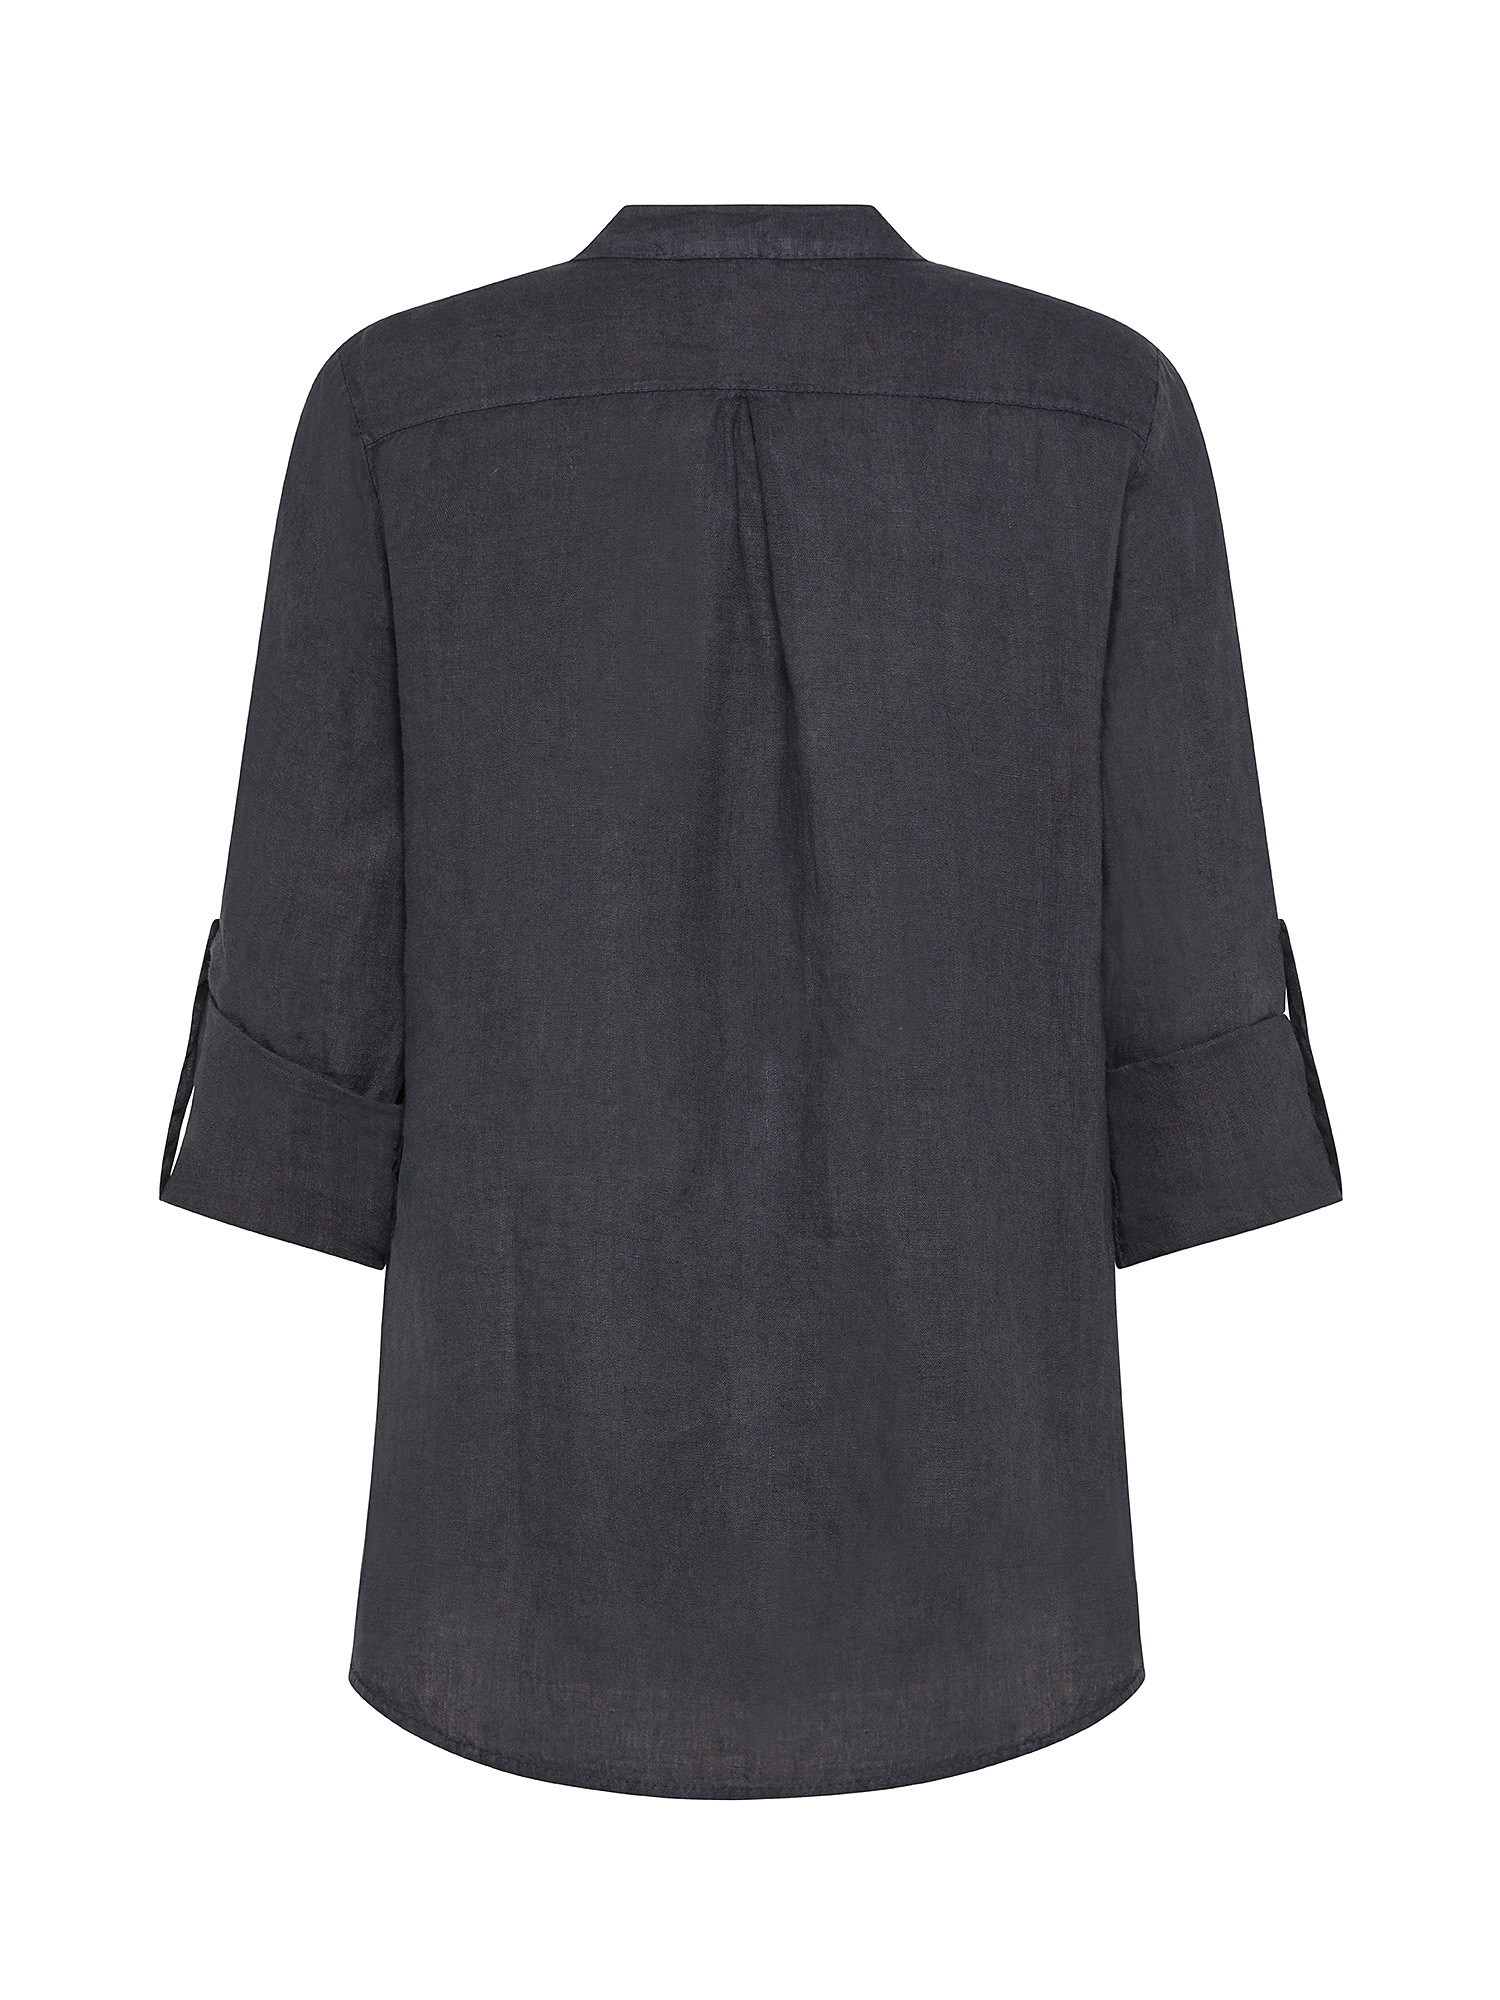 Koan - Linen blouse with pocket, Blue, large image number 1